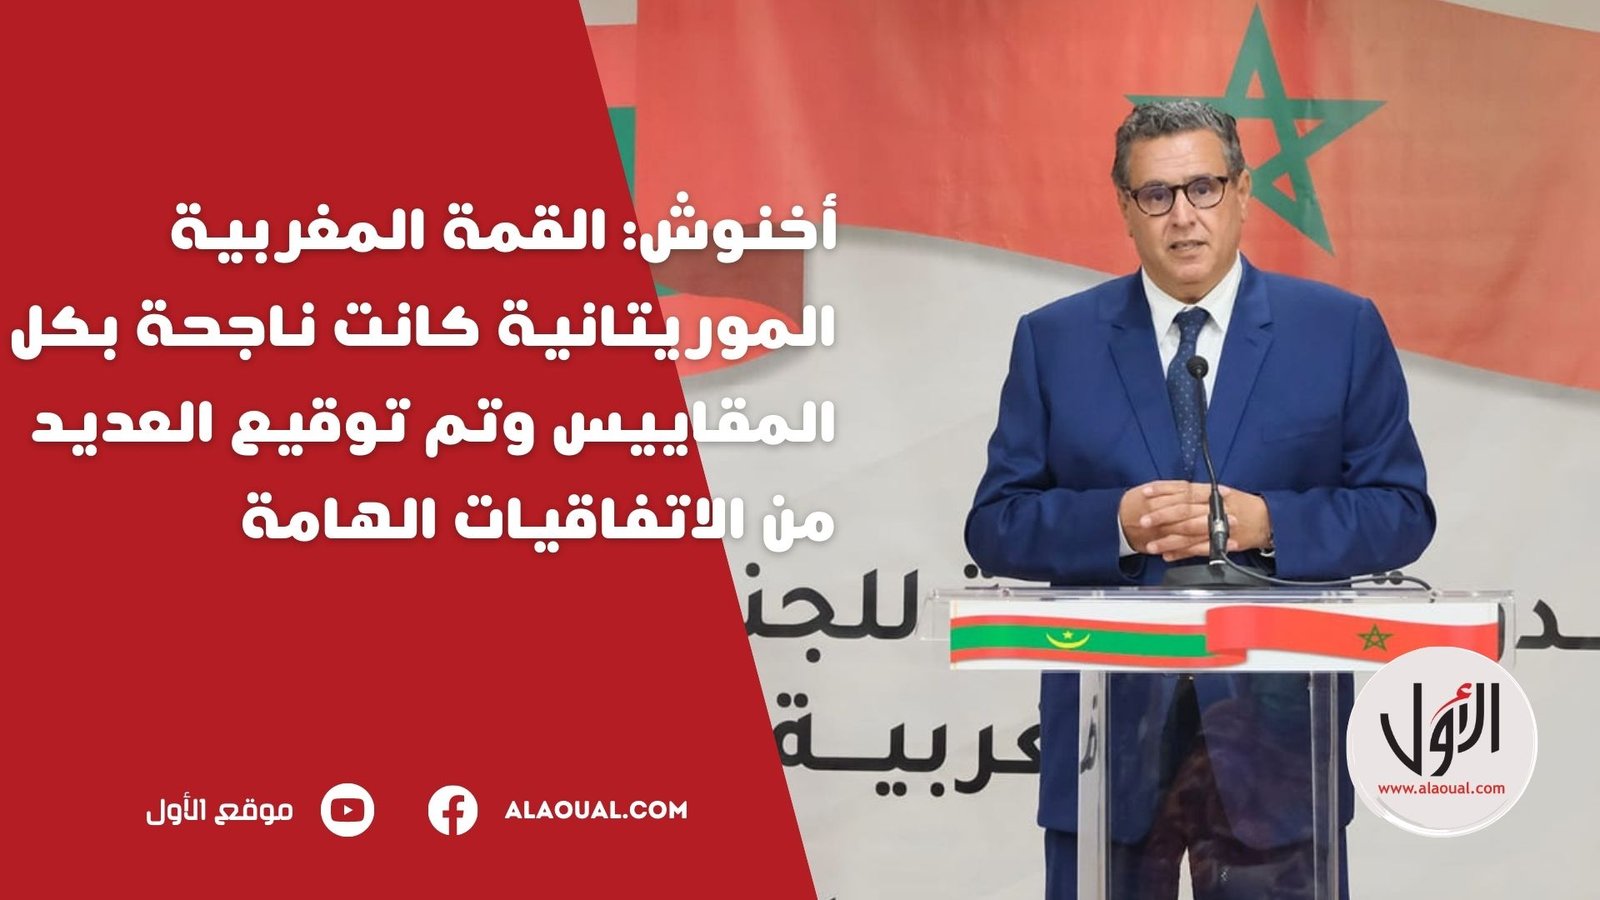 أخنوش: القمة المغربية الموريتانية كانت ناجحة بكل المقاييس وتم توقيع العديد من الاتفاقيات الهامة (فيديو)